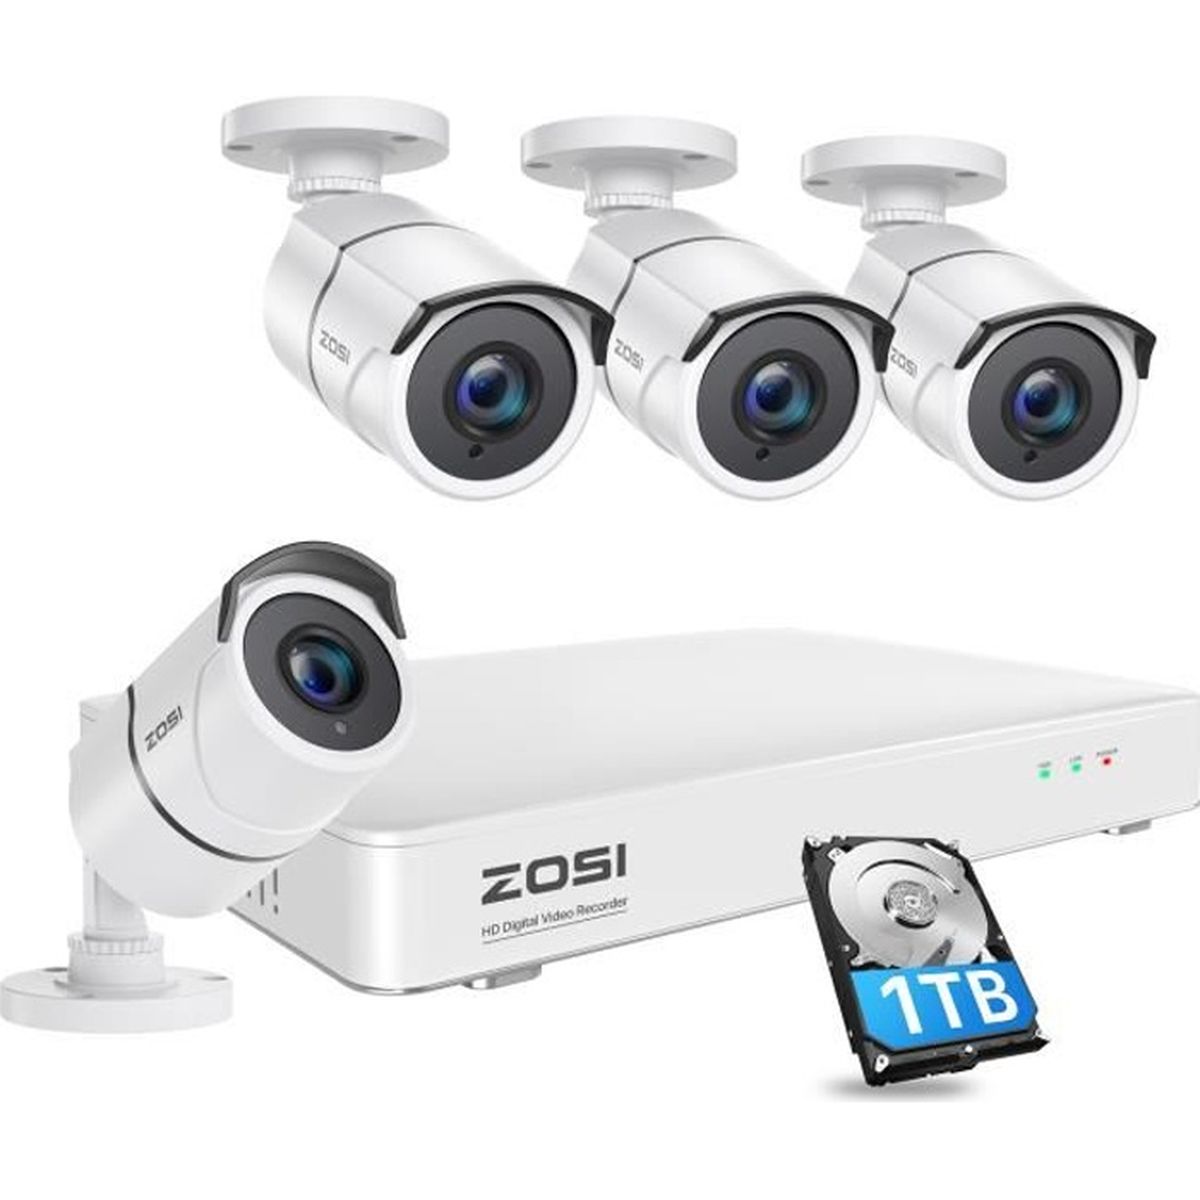 ZOSI Caméra de Surveillance sans Fil 1080p Full HD Caméra IP extérieure 65ft Vision Nocturne Détection de Mouvement et Alerte par E-Mail App Gratuite pour Le visionnage à Distance 